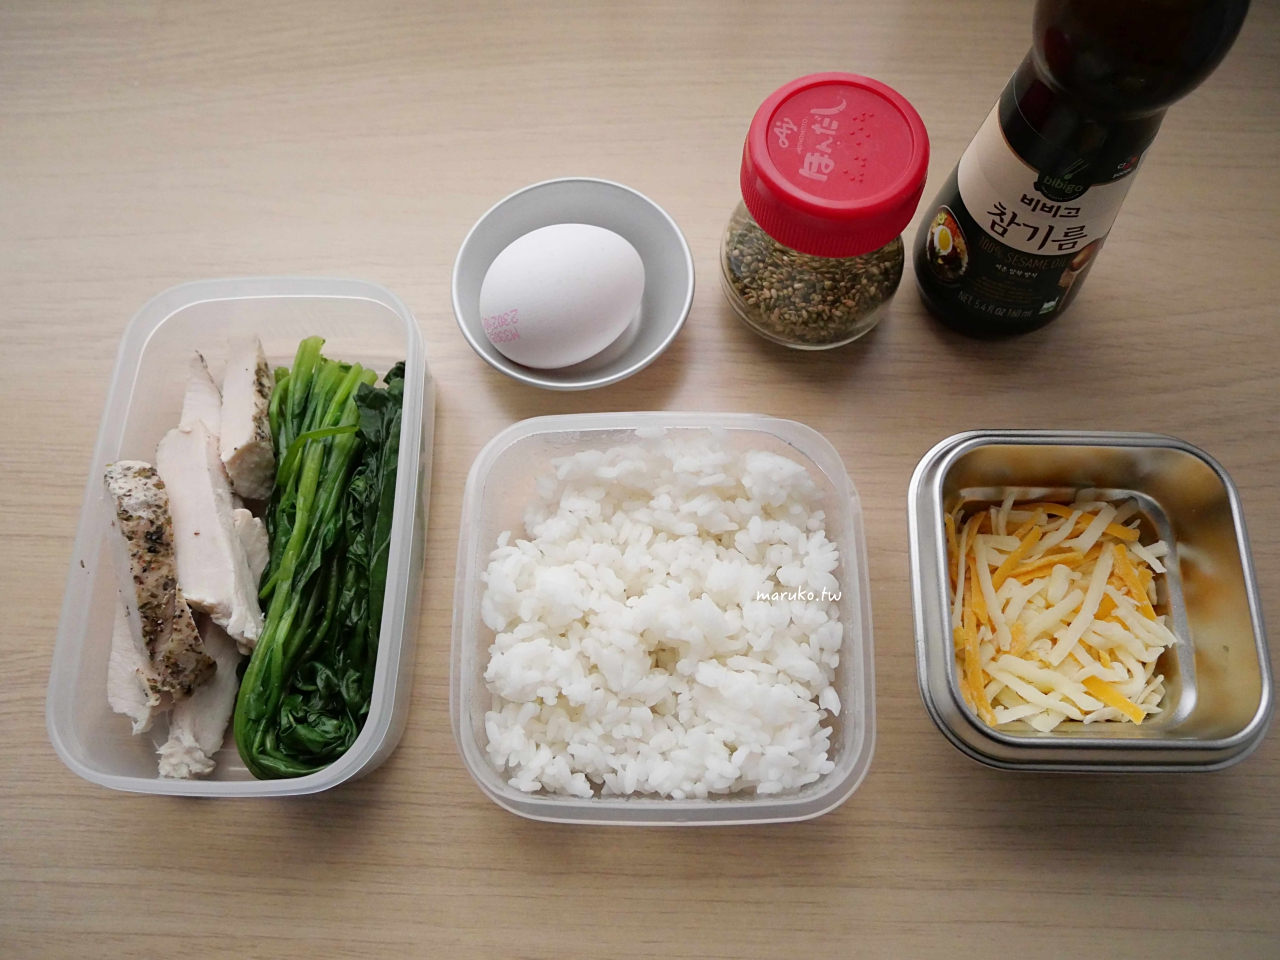 【食譜】7個電烤盤的食譜 韓式烤肉、章魚燒、日式煎餃，聚餐烤肉一次搞定！ @Maruko與美食有個約會